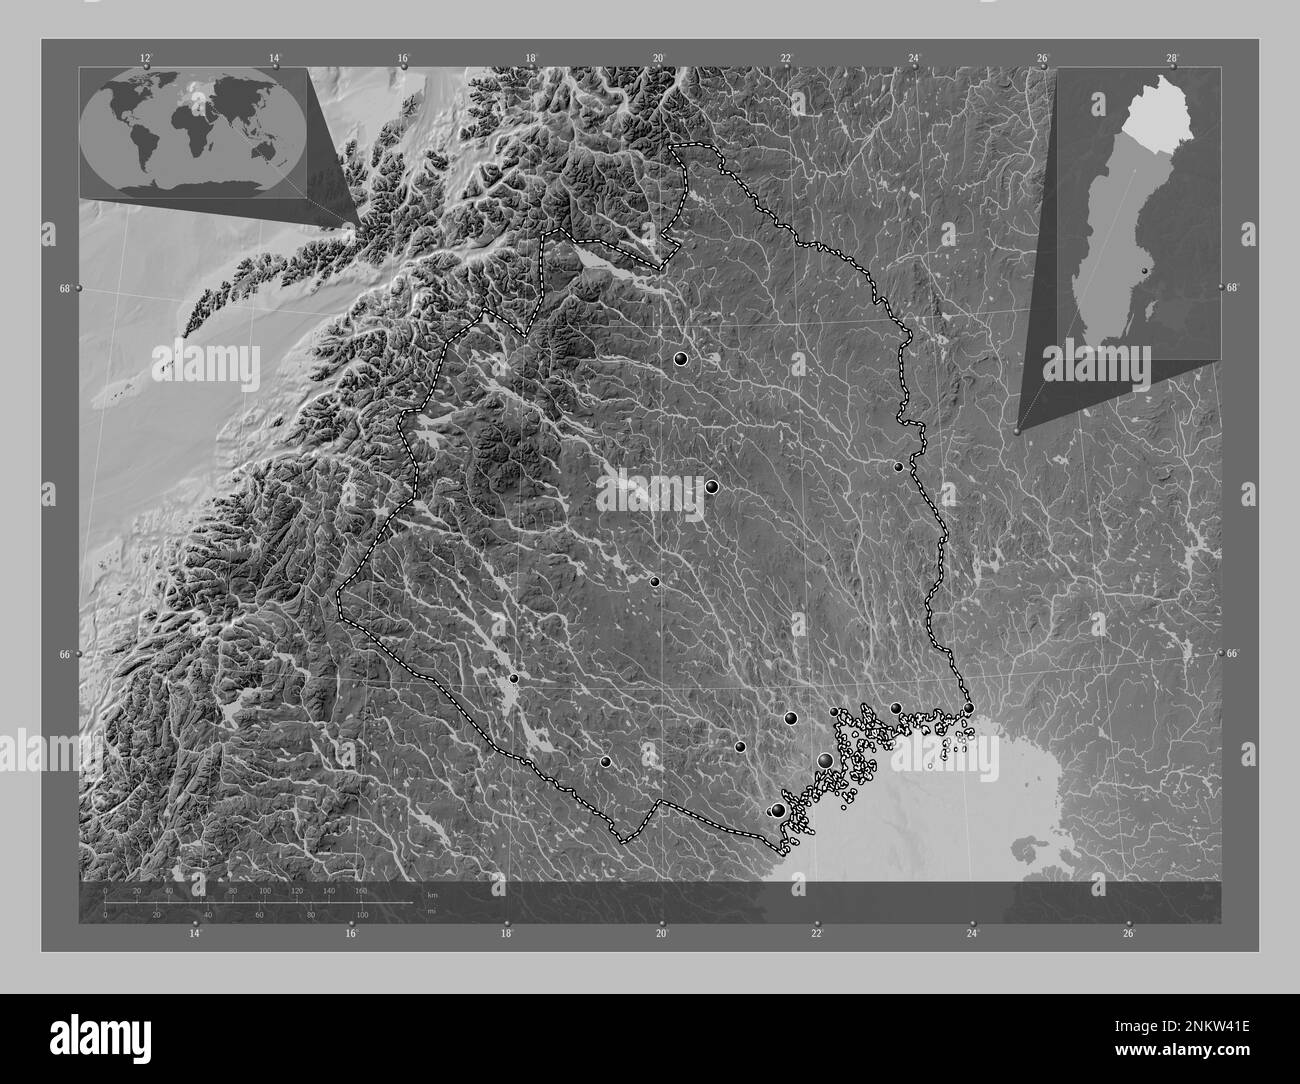 Norrbotten, contea di Svezia. Mappa in scala di grigi con laghi e fiumi. Posizioni delle principali città della regione. Mappe delle posizioni ausiliarie degli angoli Foto Stock